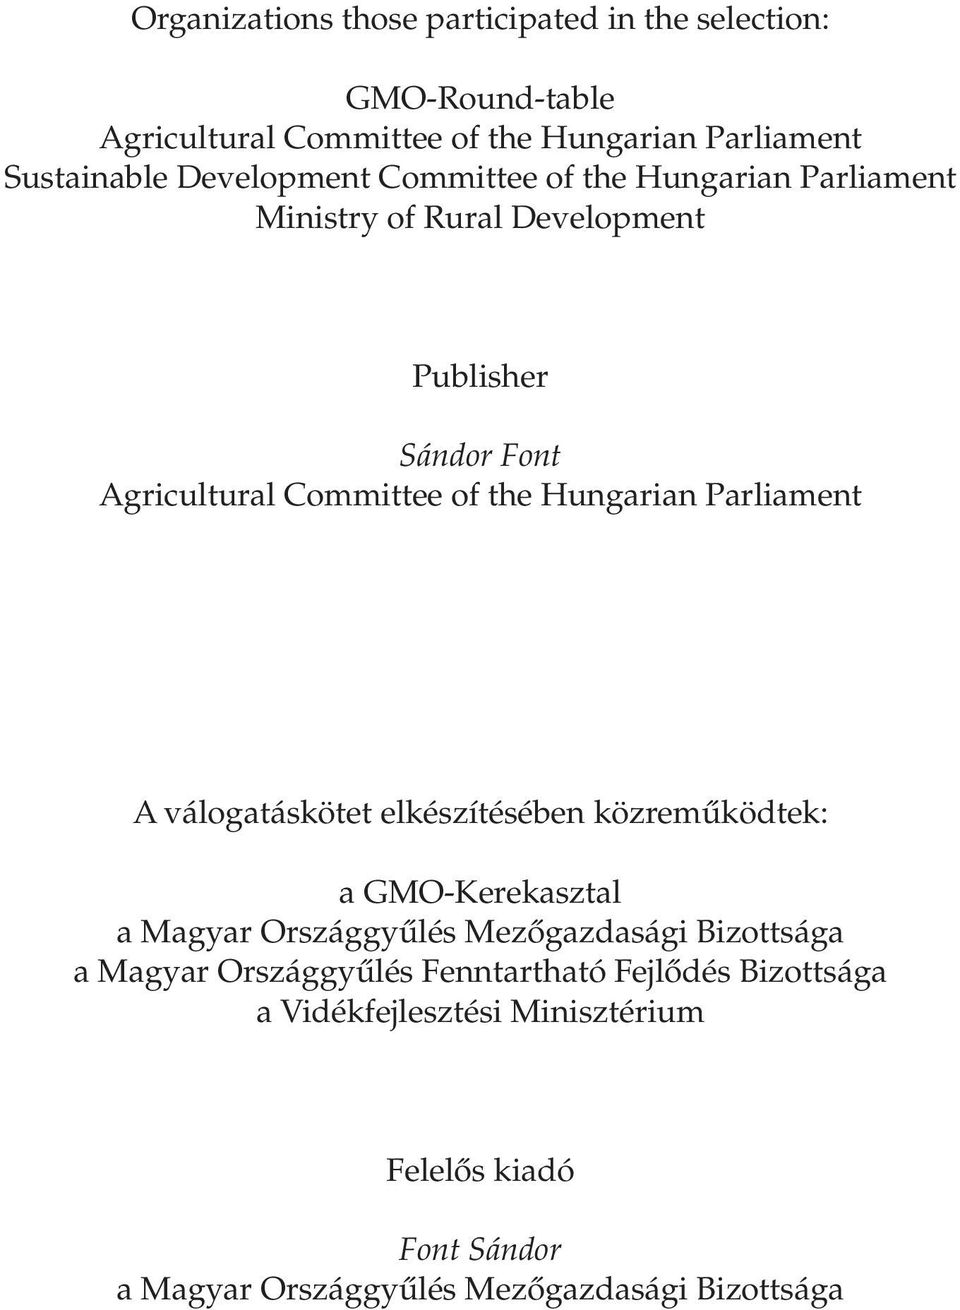 Hungarian Parliament A válogatáskötet elkészítésében közremûködtek: a GMO-Kerekasztal a Magyar Országgyûlés Mezôgazdasági Bizottsága a